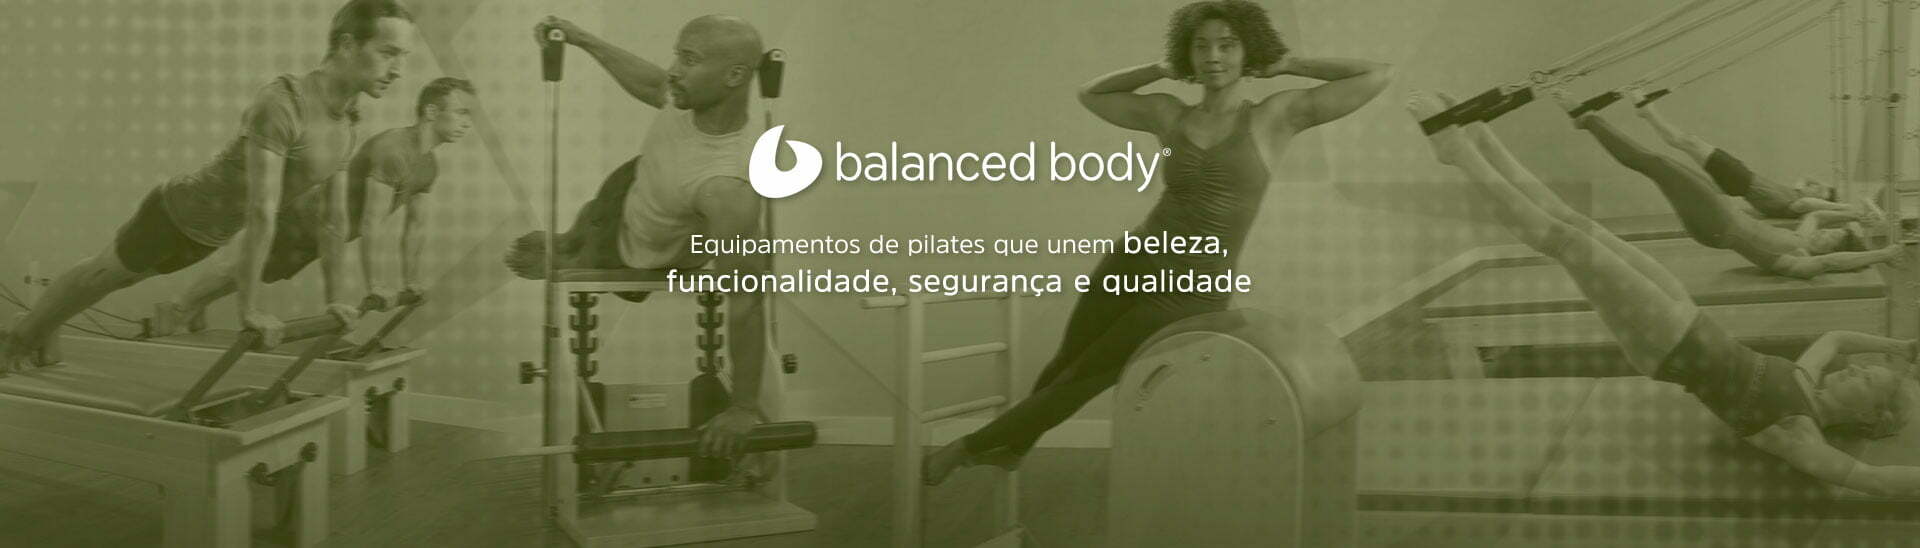 Aparelhos para Pilates Balanced Body